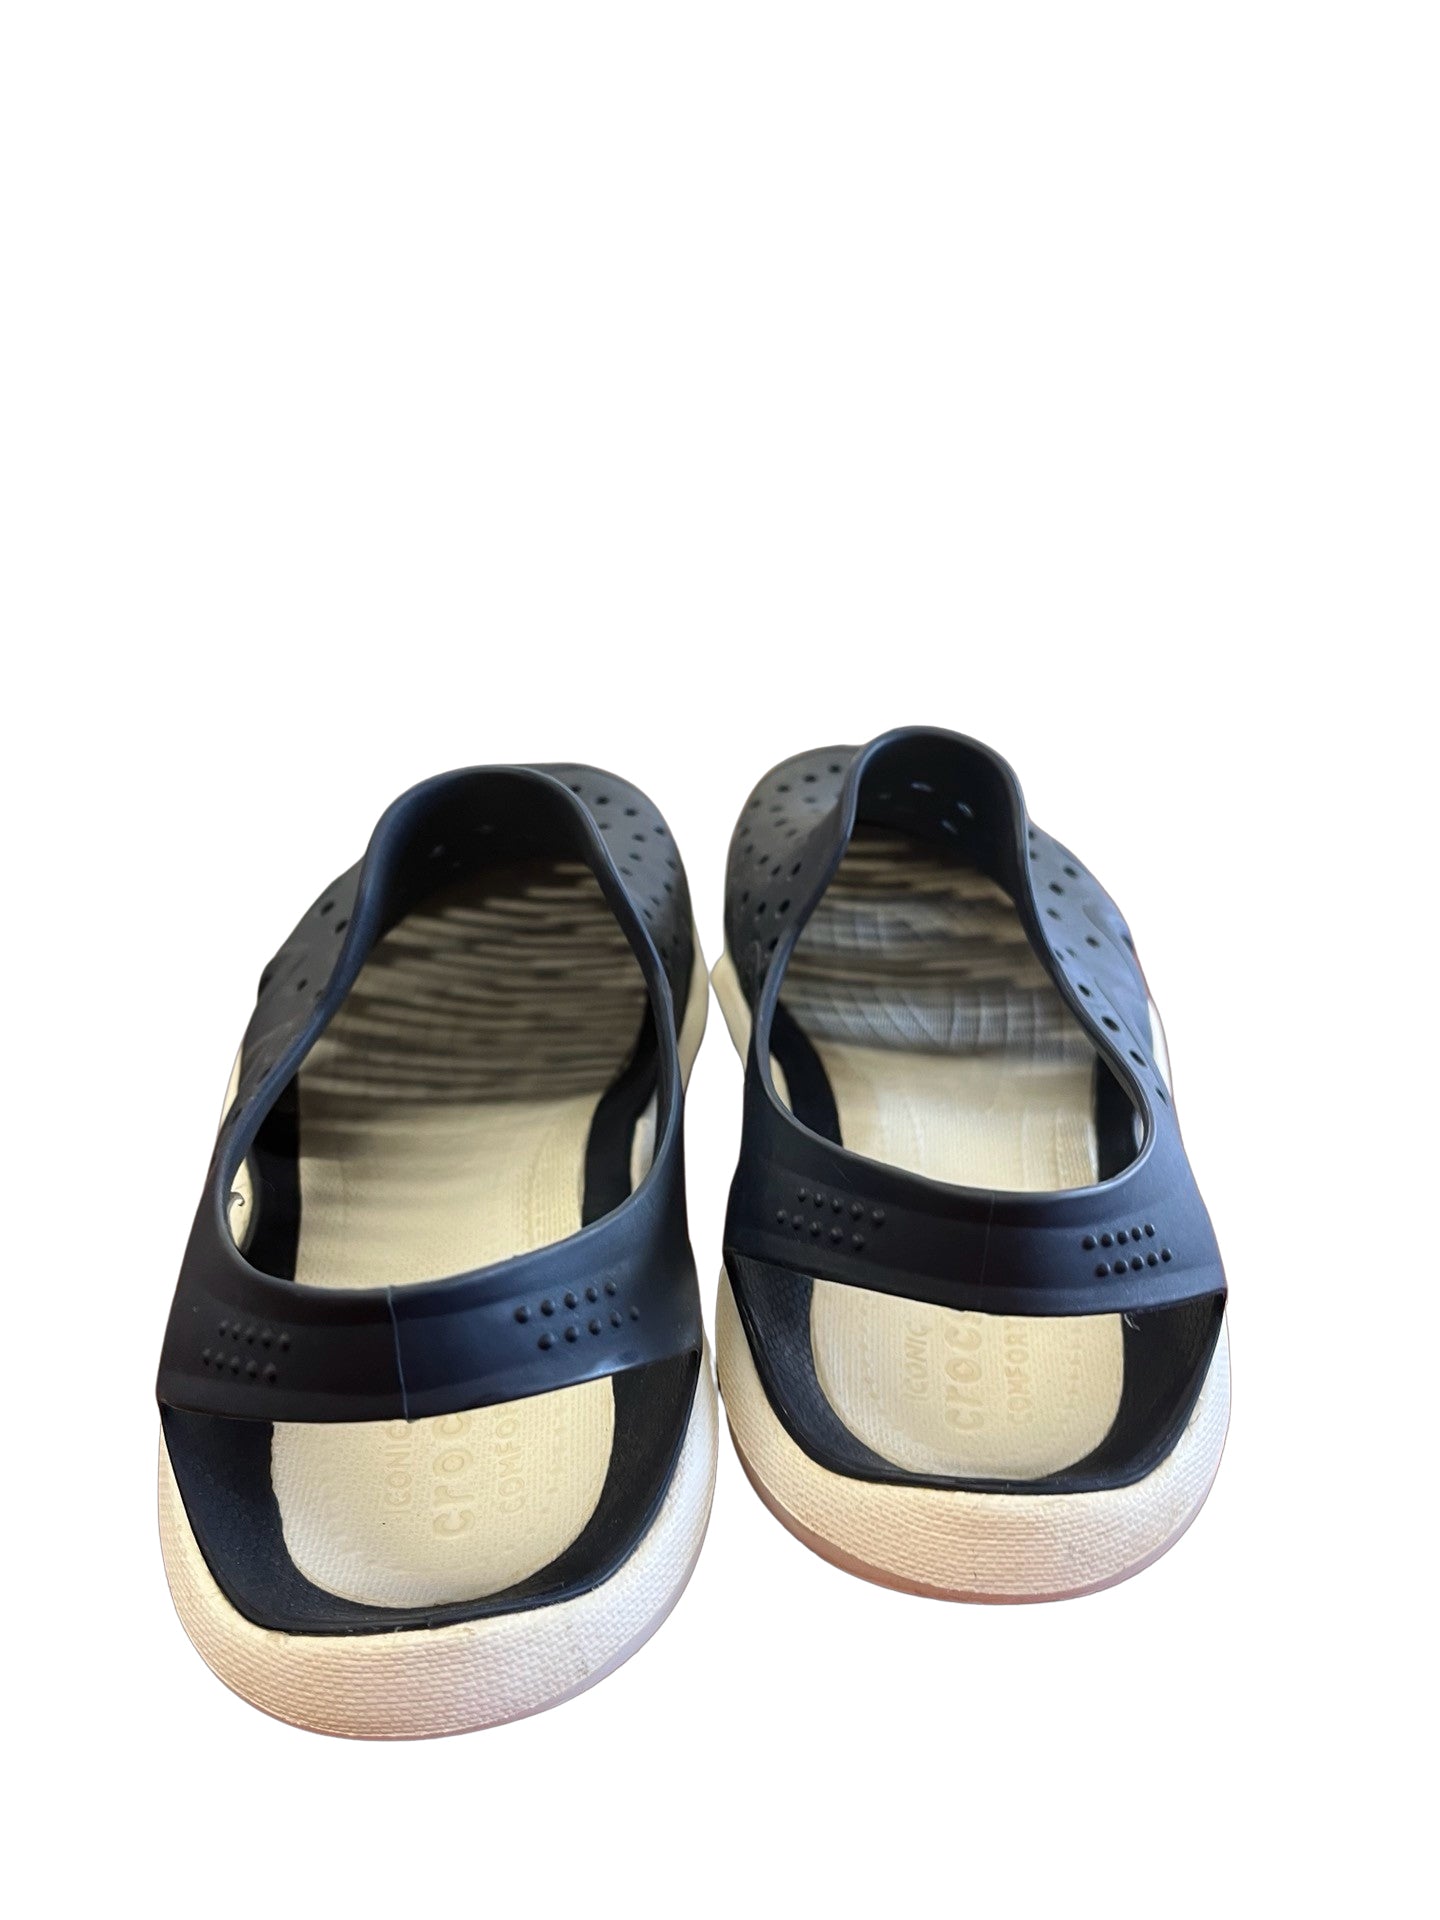 11 Crocs Sandals